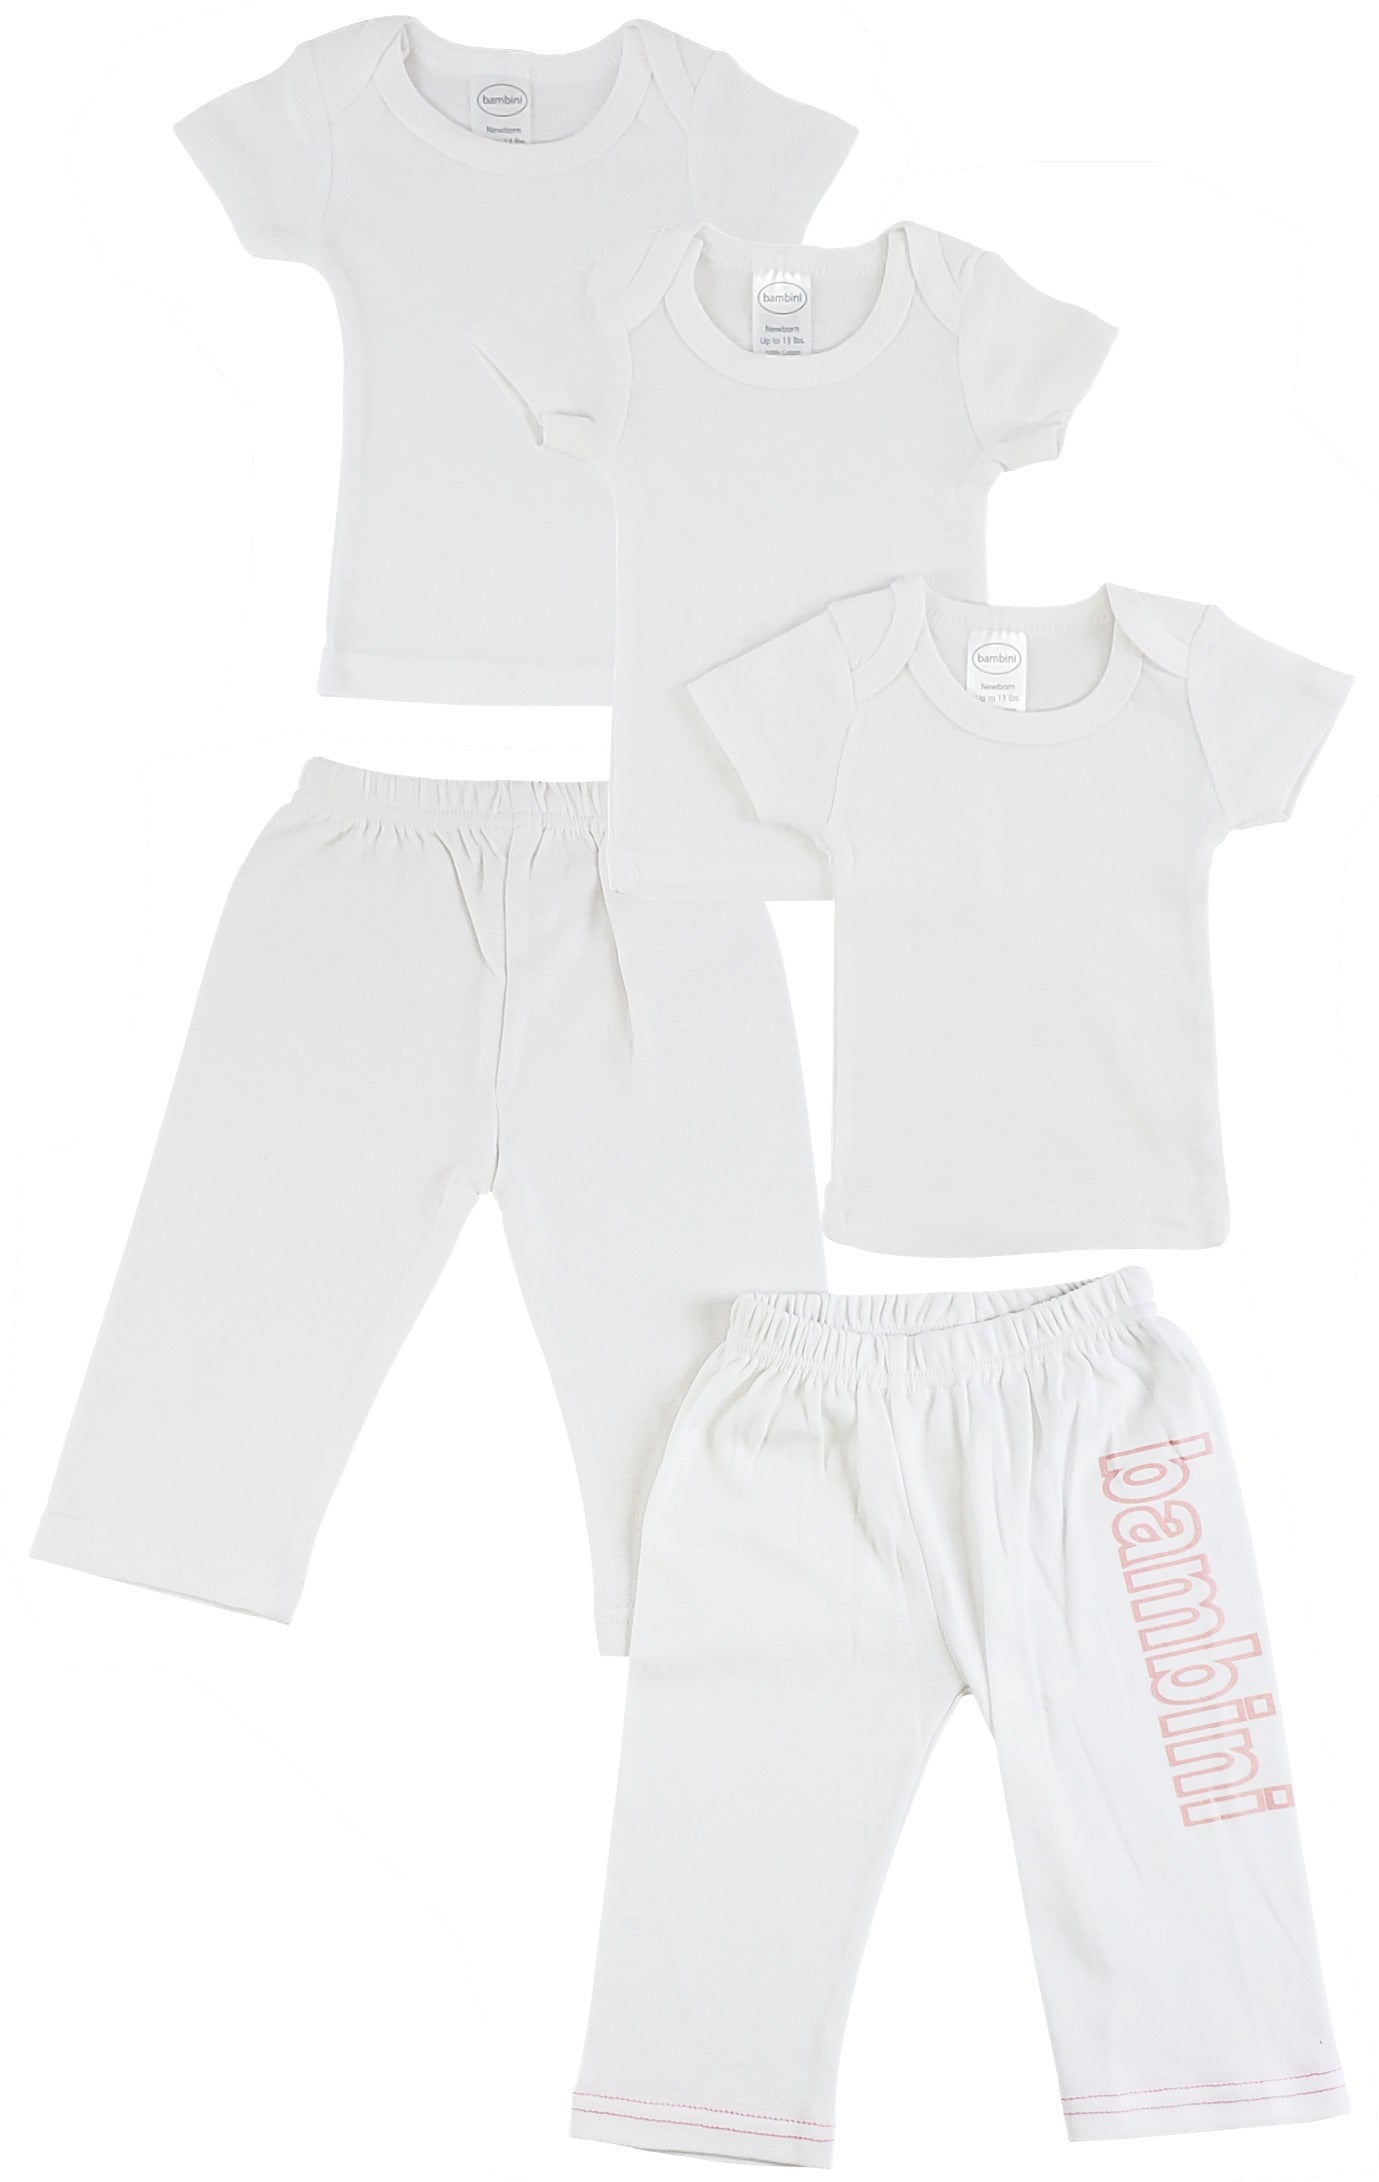 Infant T-Shirts and Track Sweatpants CS_0449